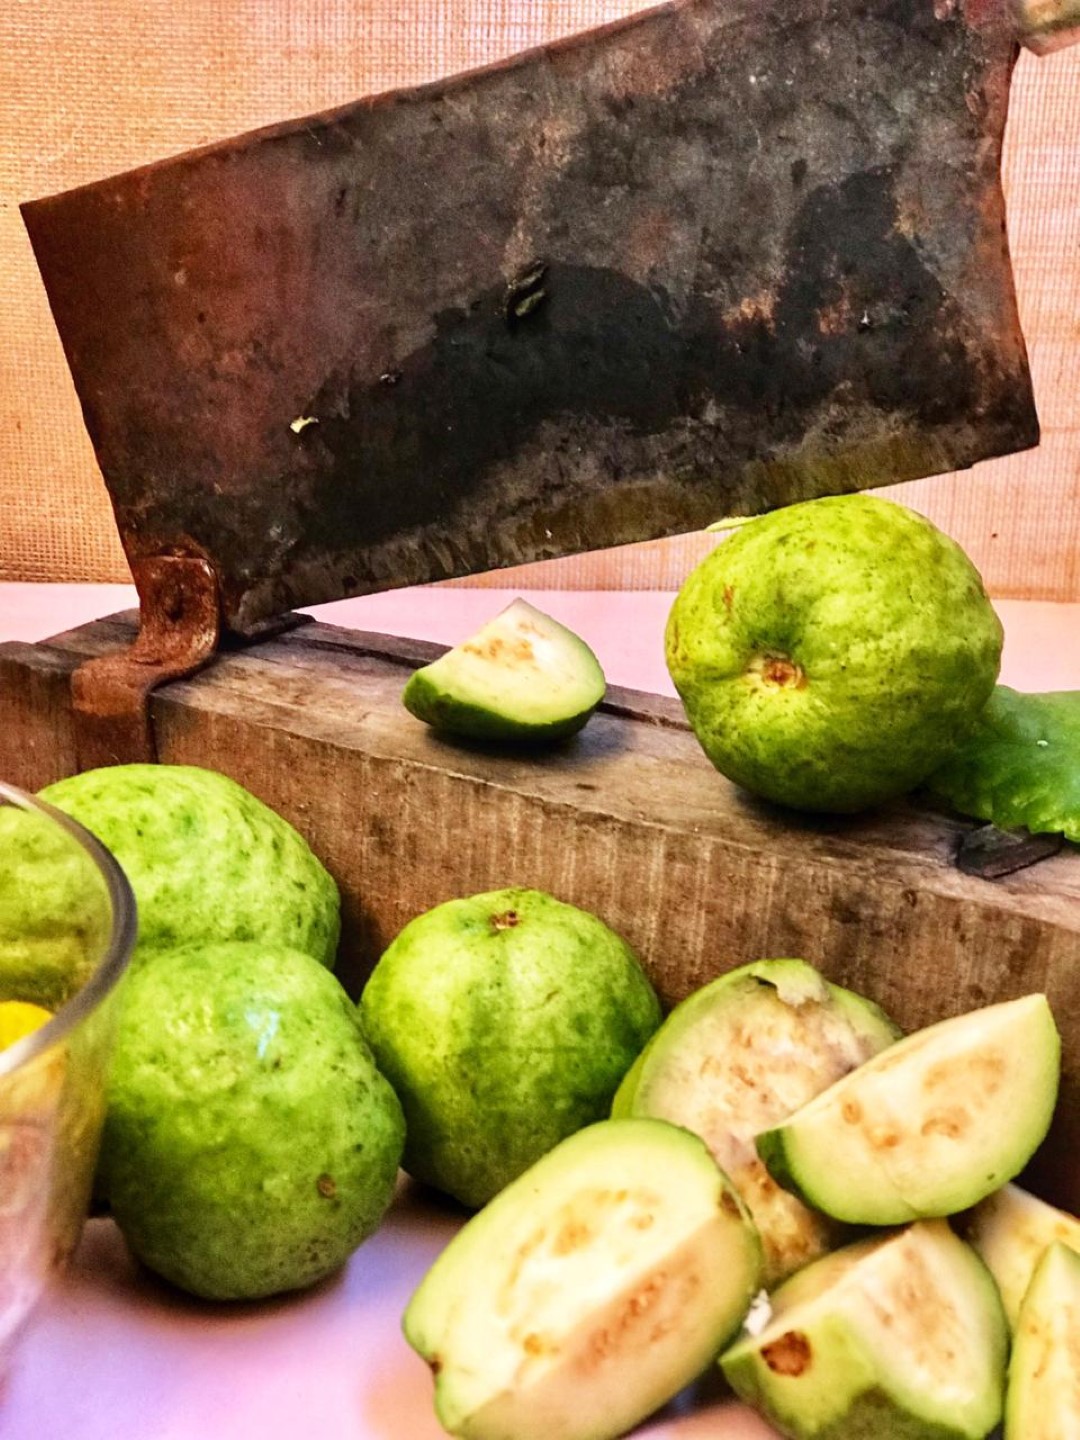 Overripe guavas turned into delicious pickle